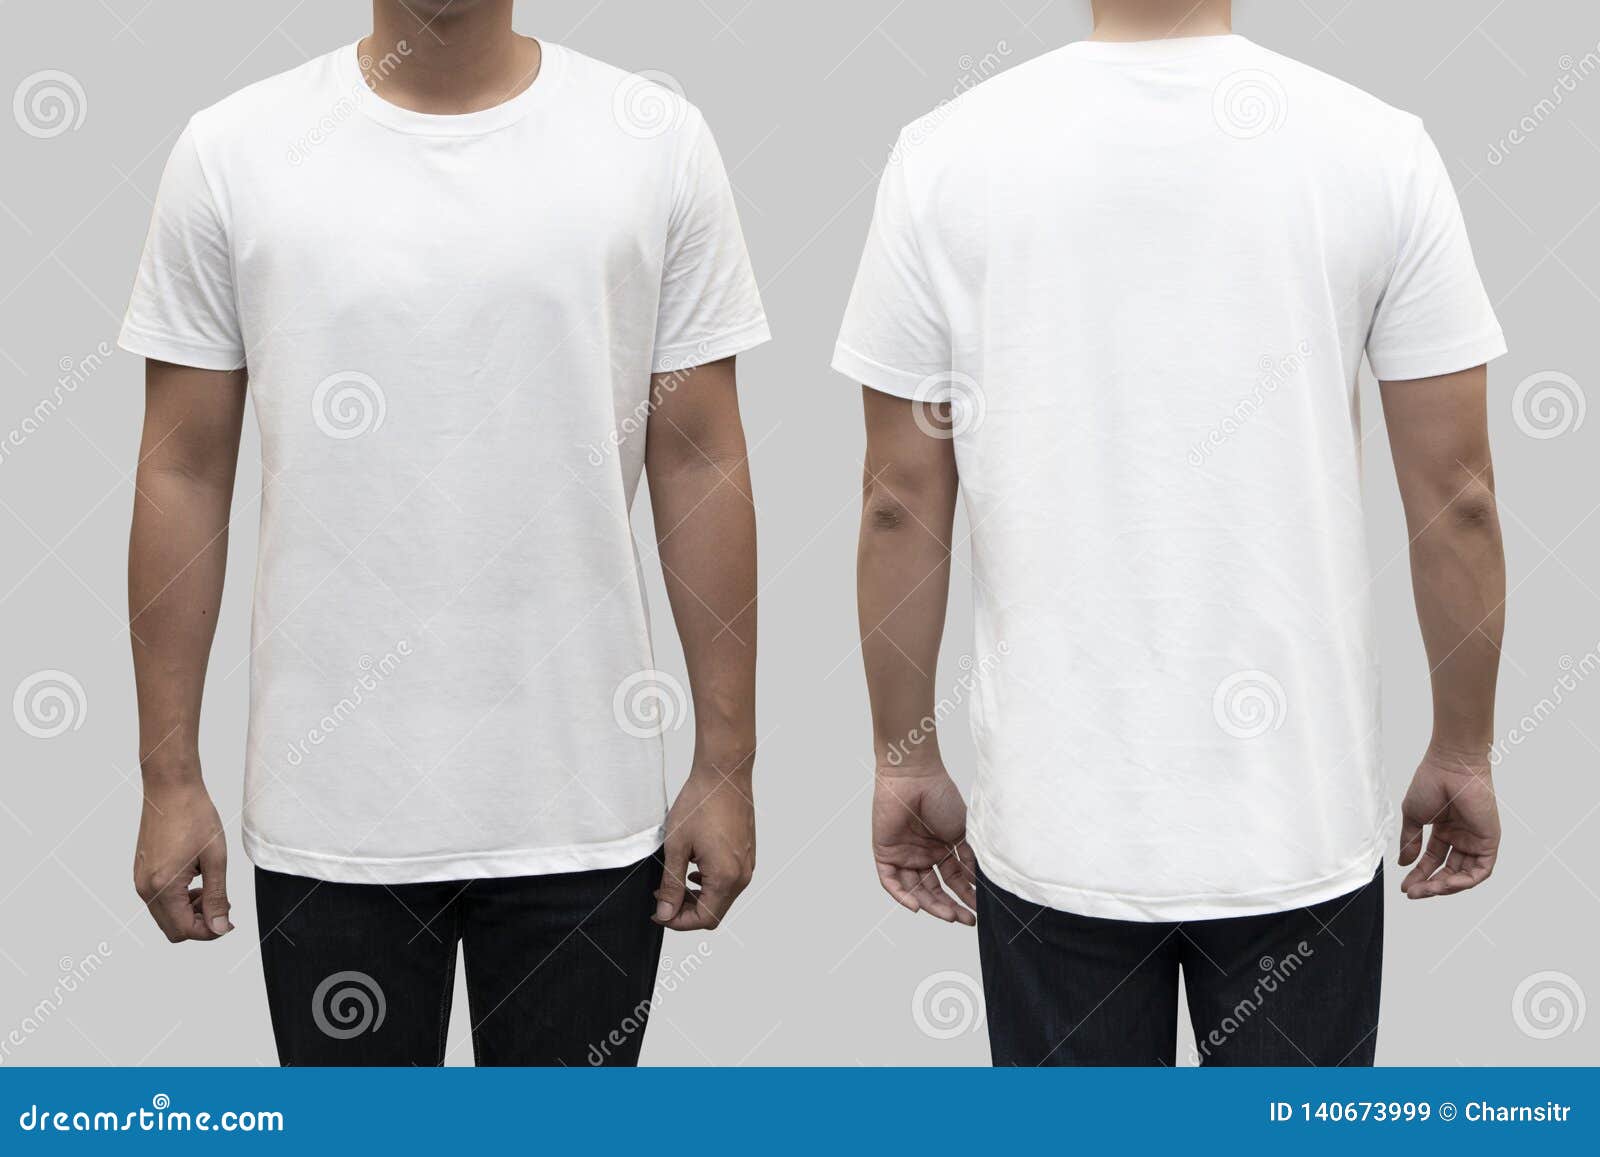 Frente Aislado Y Camiseta Blanca Trasera En Un Cuerpo Del Hombre Como Plantilla de archivo - Imagen de primer, blanco: 140673999